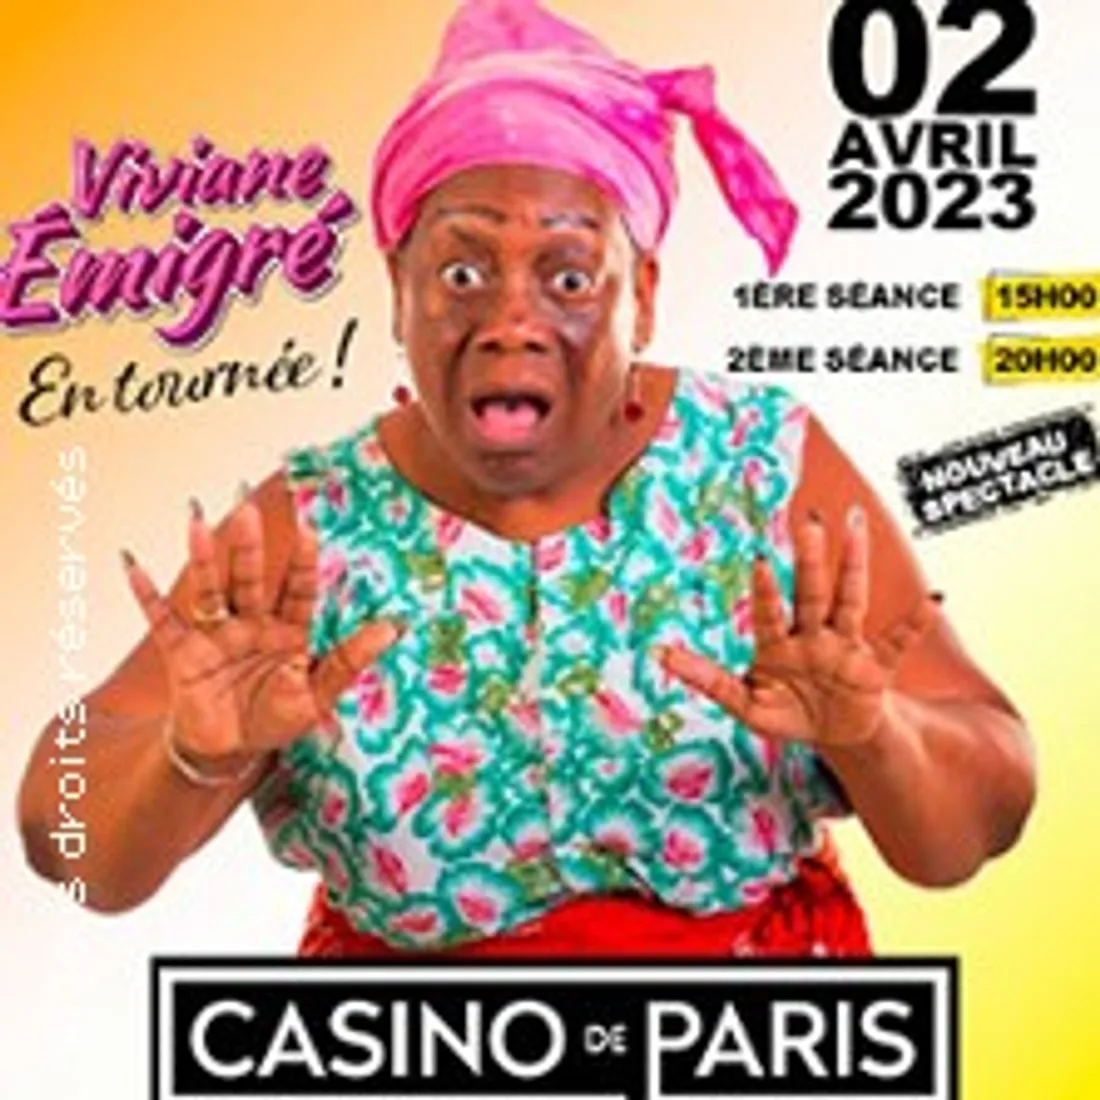 EVENEMENT TROPIQUES FM : VIVIANE EMIGRé AU CASINO DE PARIS ! 